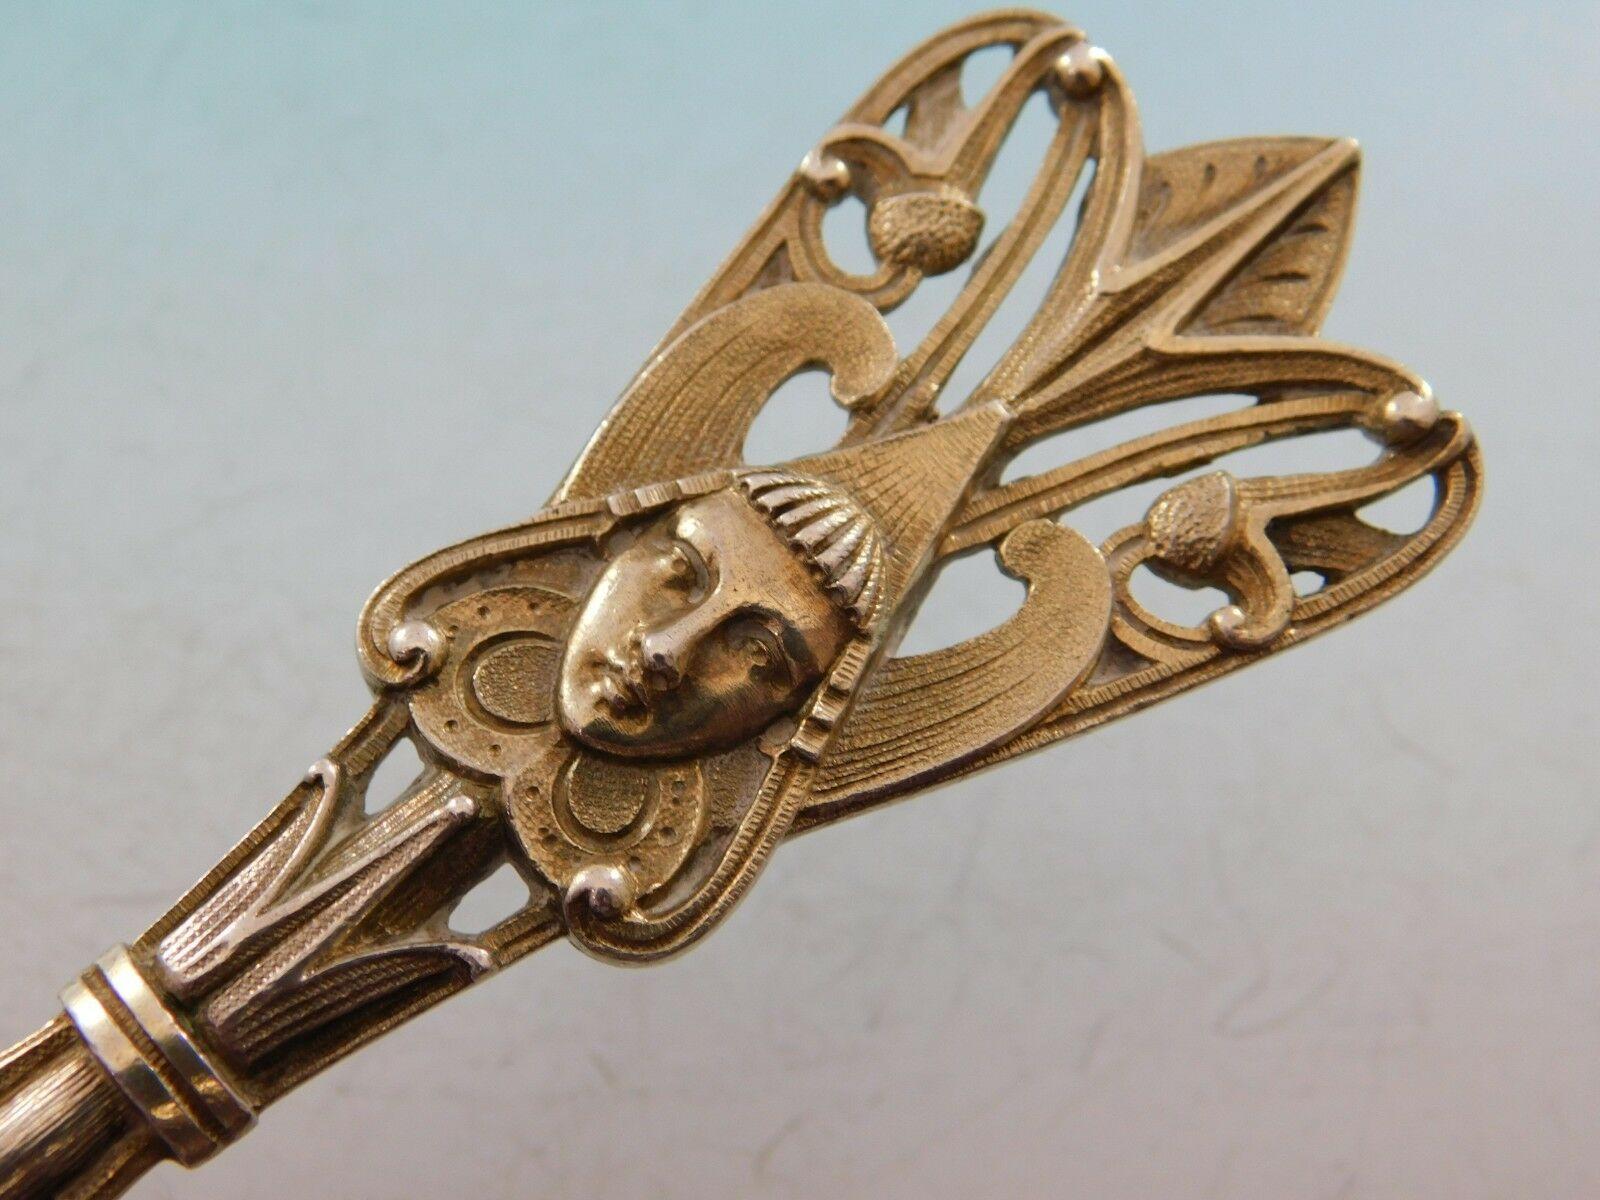 Art Silver circa 1860-1883 Coin Silver Master Nut Spoon GW Egyptian Motif Snake 2